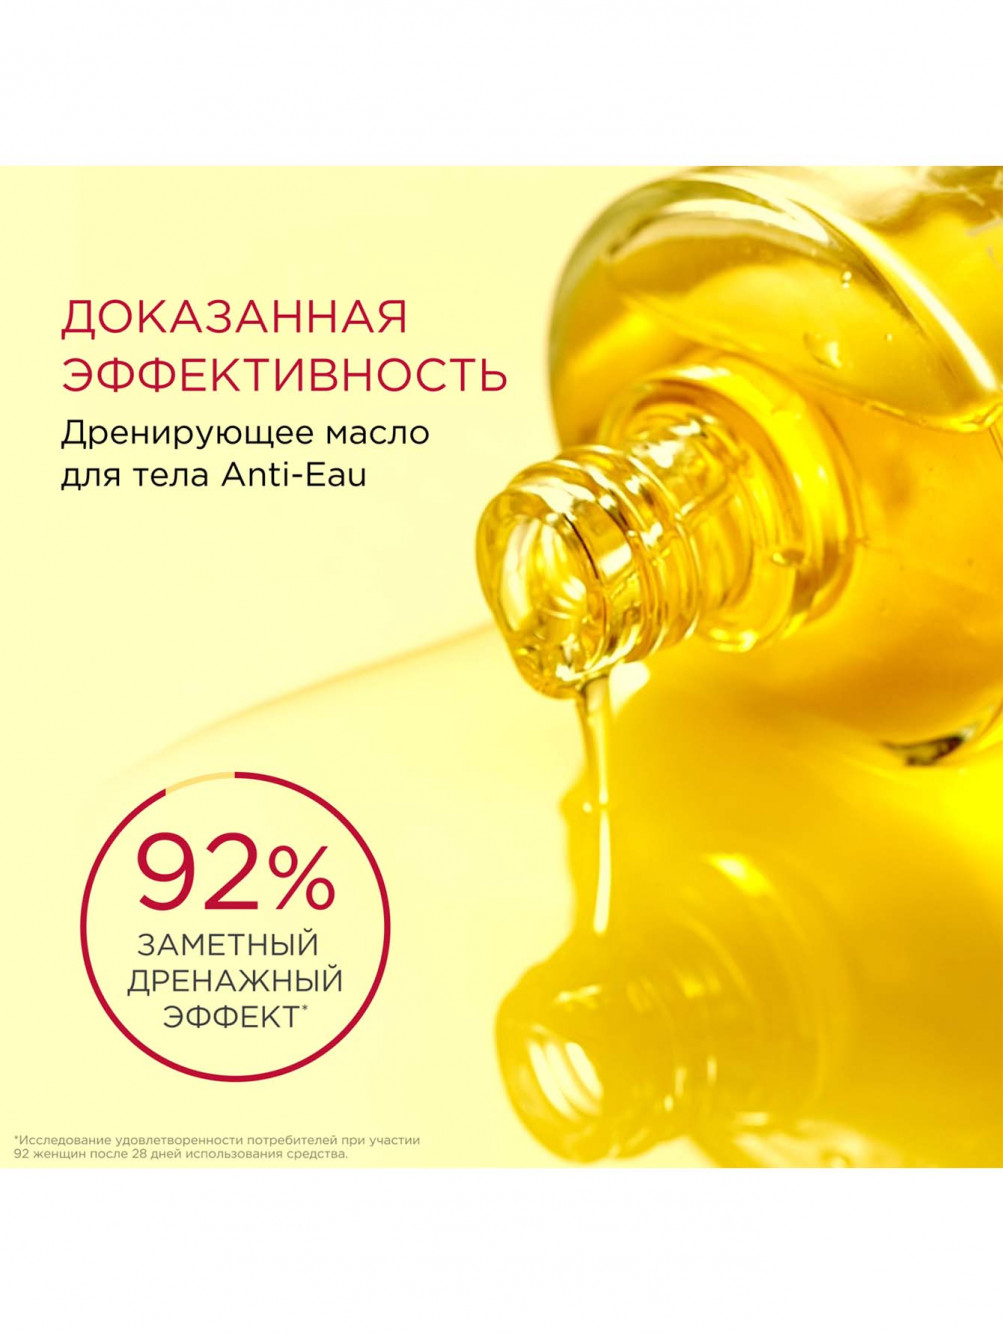 Дренирующее масло для тела Anti-Eau, 100 мл - Обтравка2